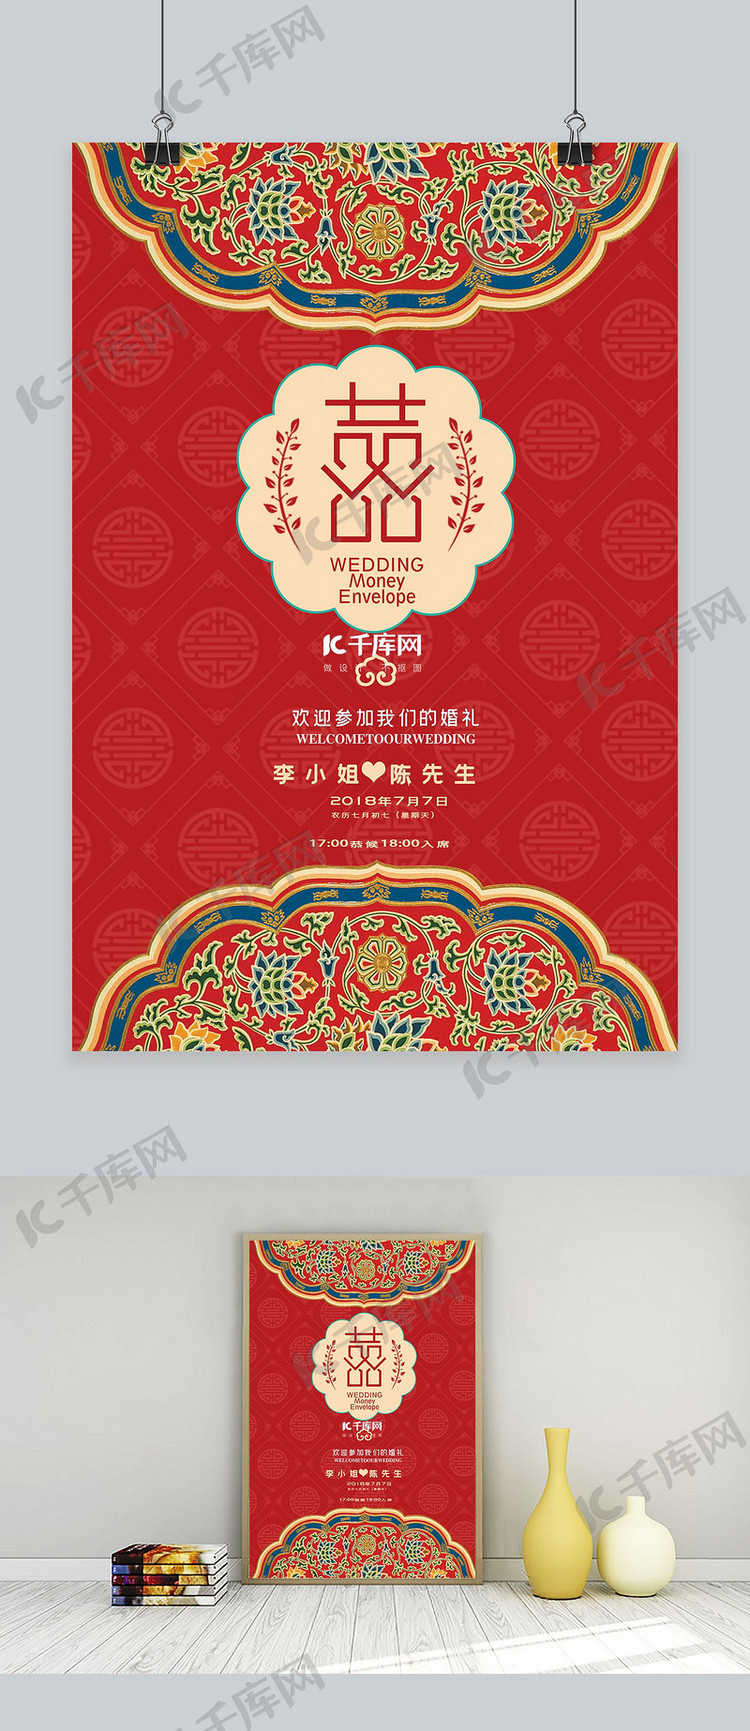 婚礼季中国红色传统婚礼请柬吧海报